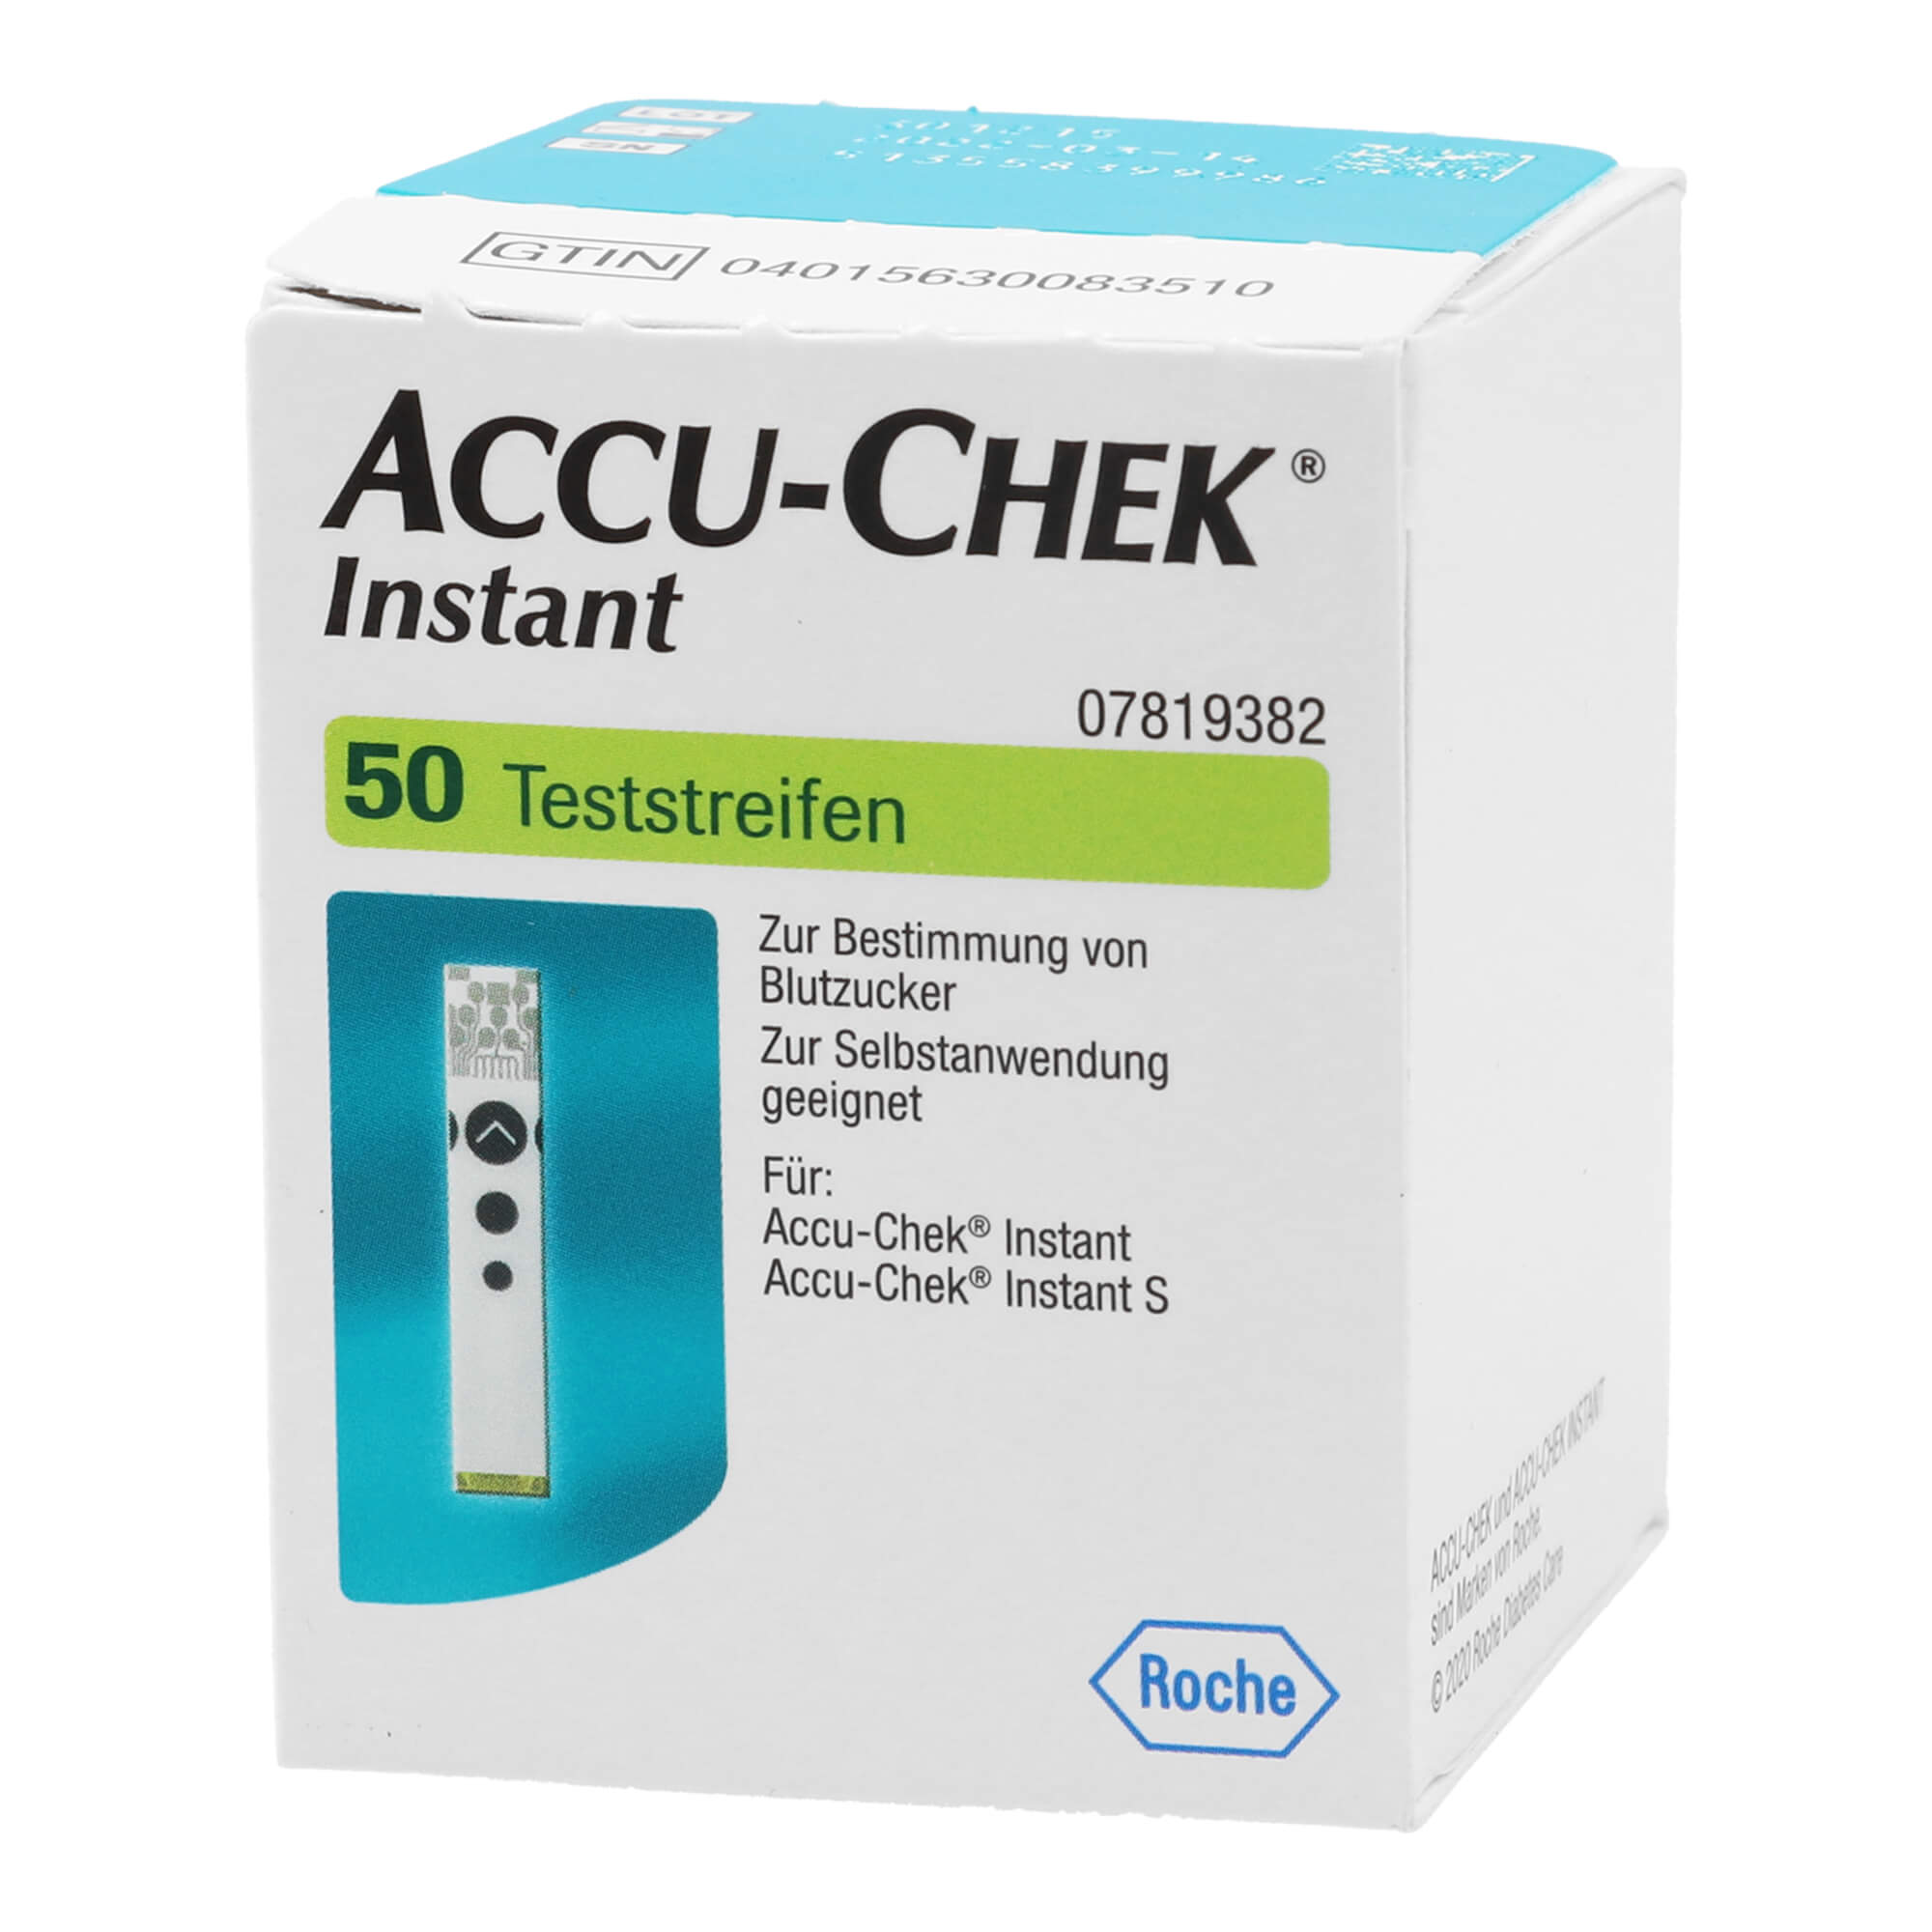 Teststreifen zur quantitativen Blutzuckerbestimmung mit Accu-Chek Instant.